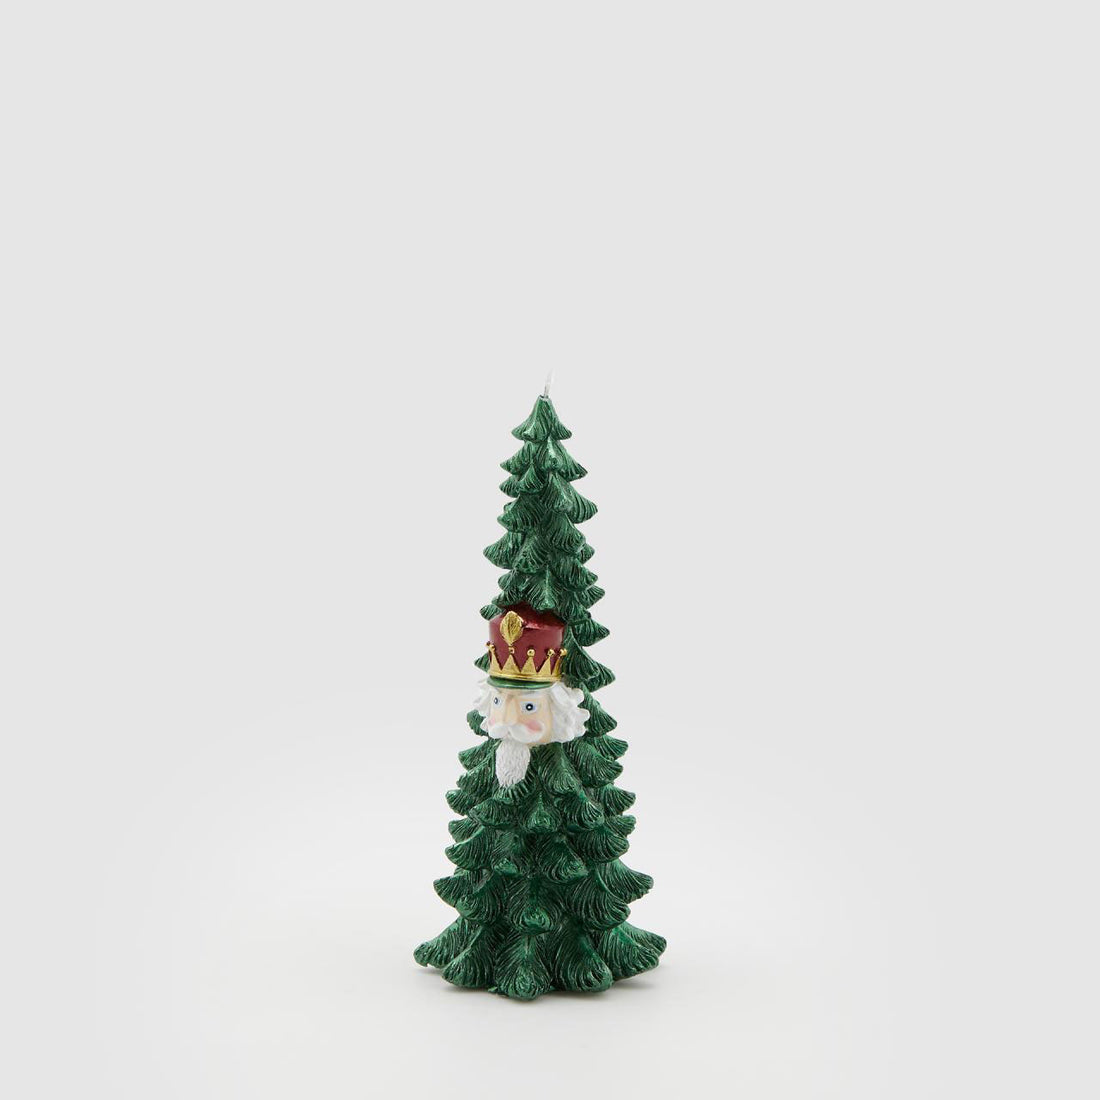 EDG - Candela Albero di Natale Soldatino Decorazione Natalizia 21cm